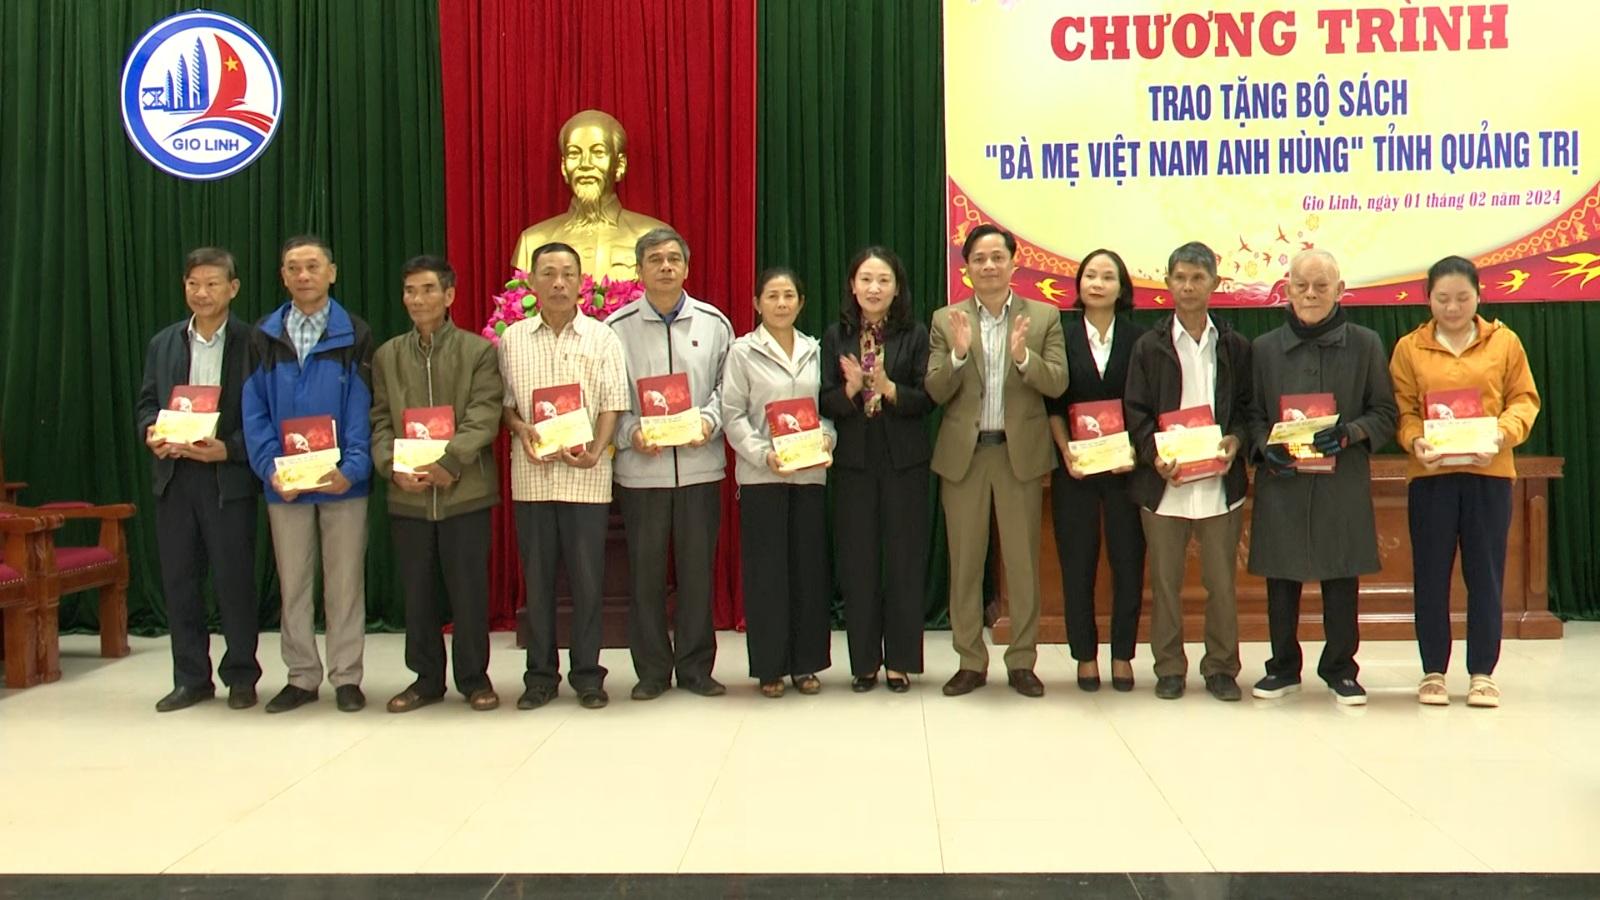 UBND huyện Gio Linh tổ chức buổi lễ trao tặng bộ sách Bà mẹ Việt Nam anh hùng cho thân nhân các...